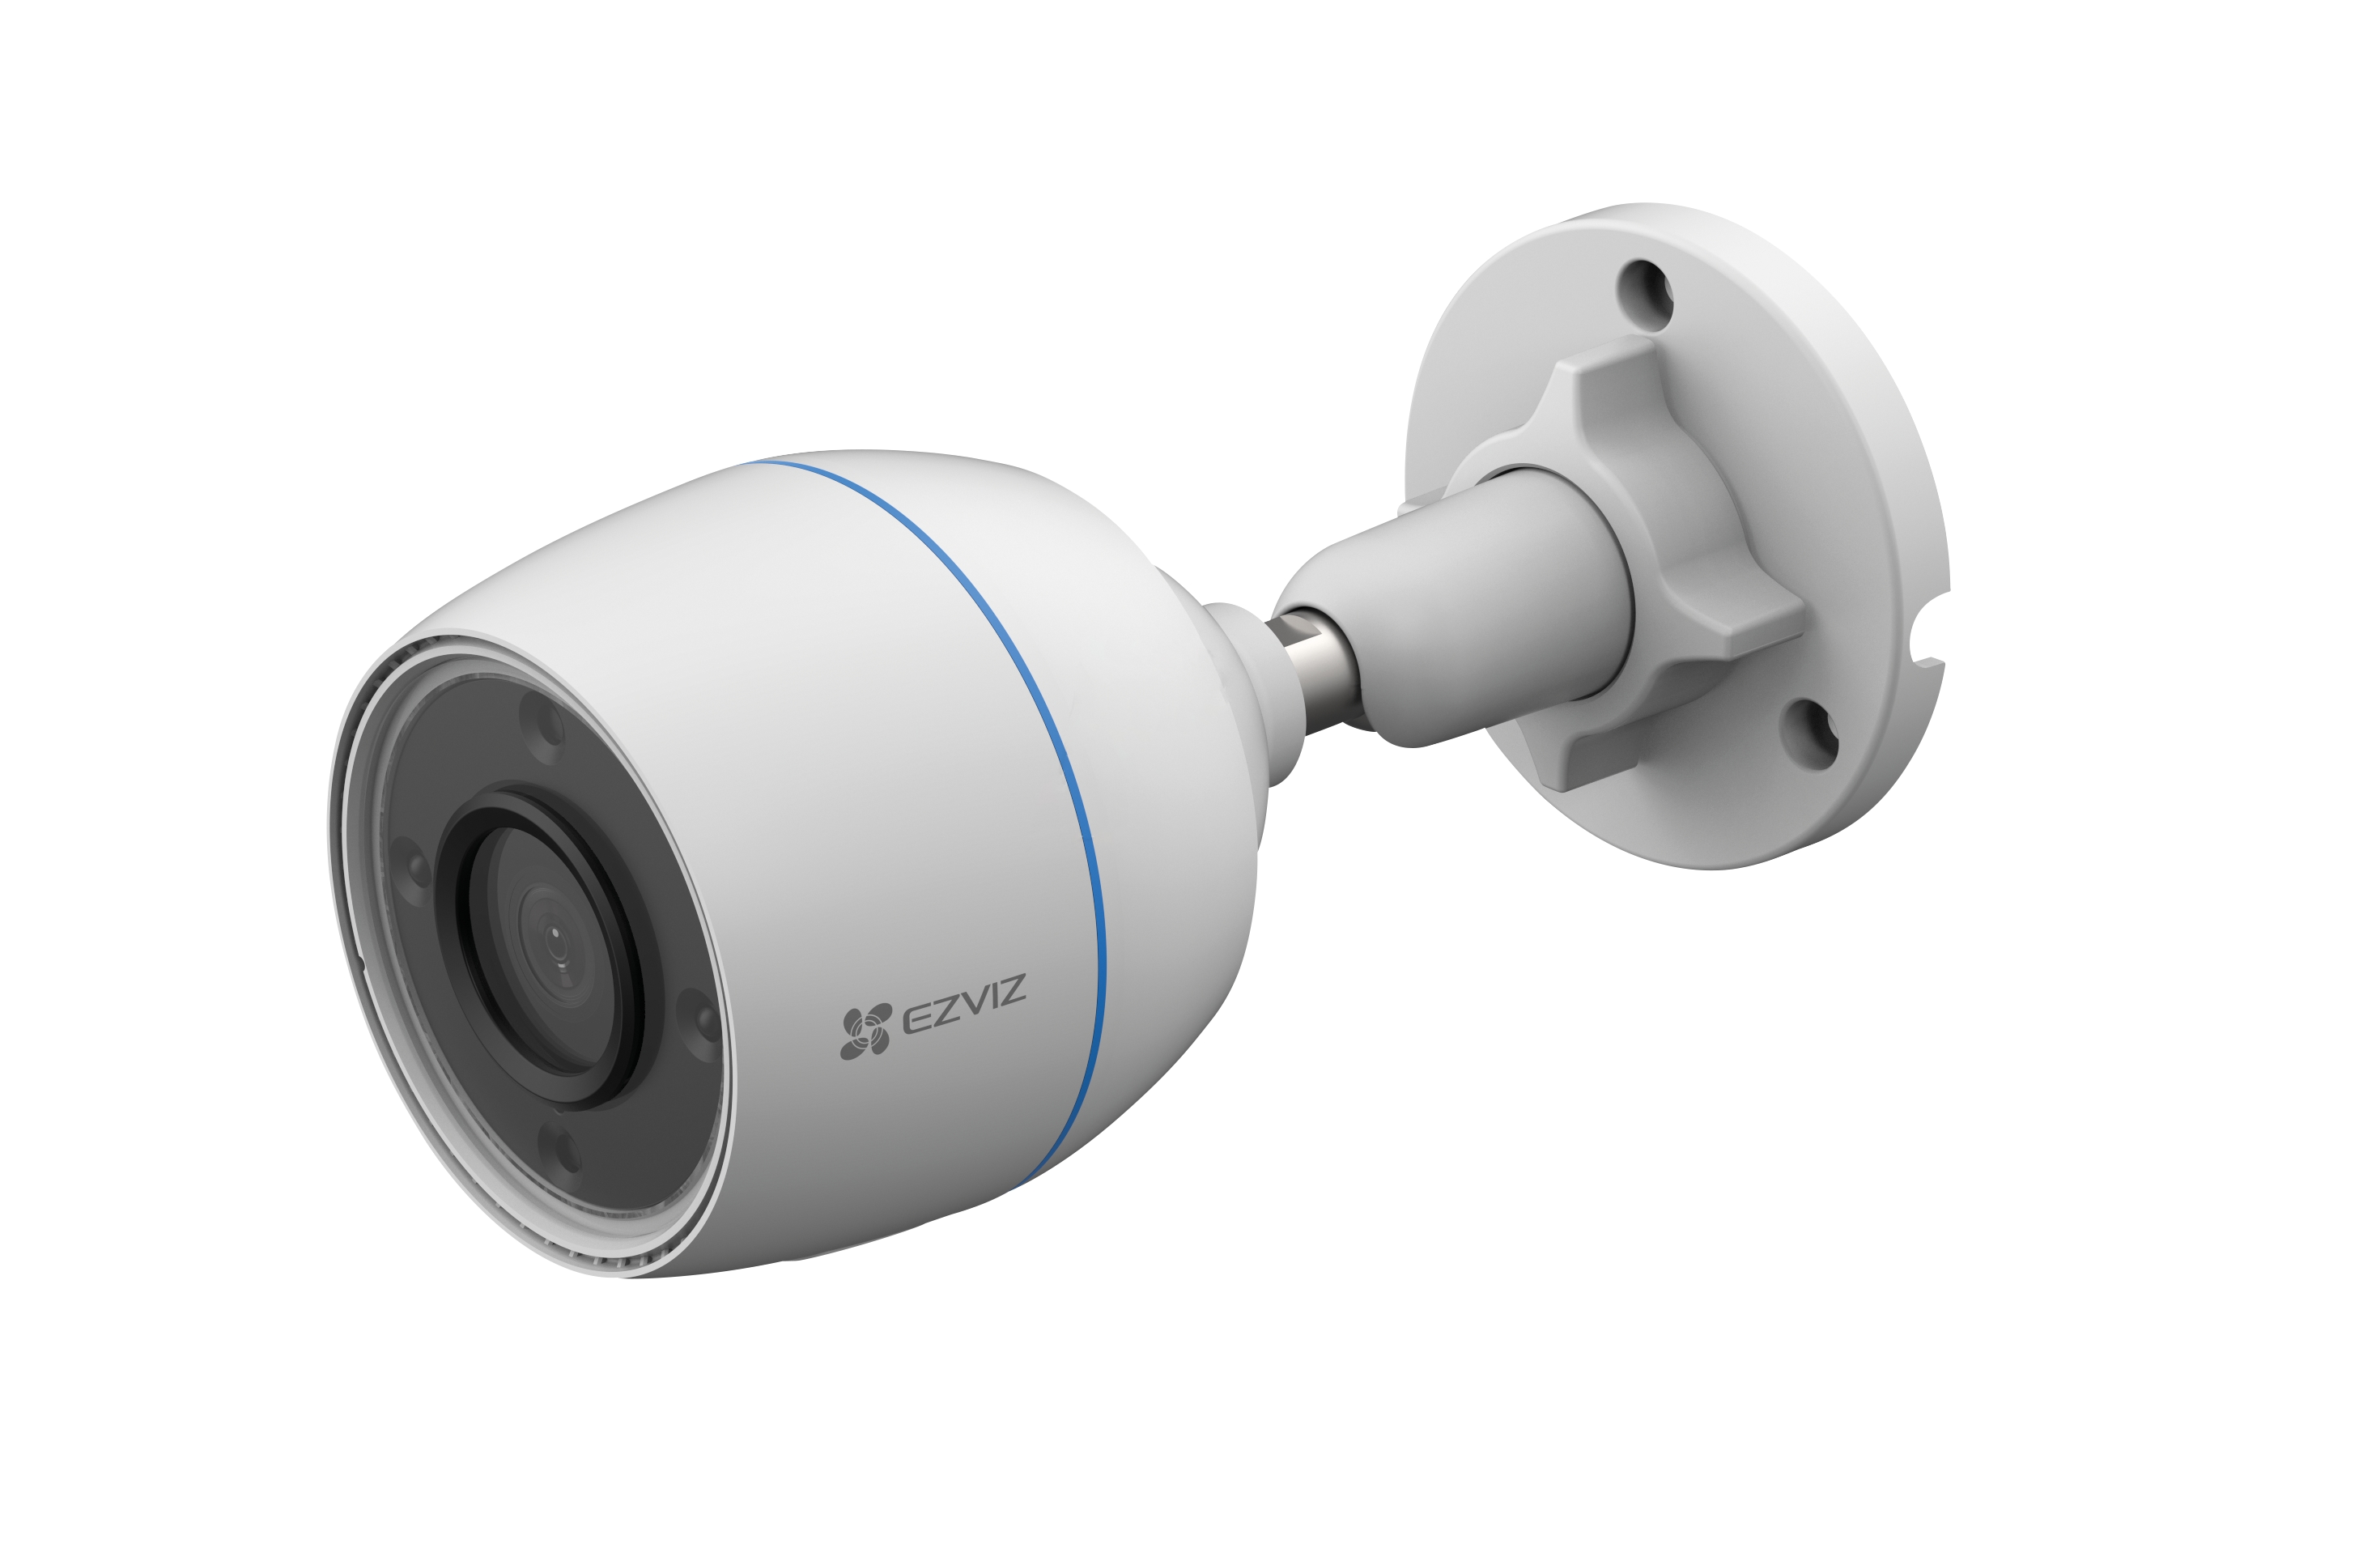 Камера видеонаблюдения уличная модель EZVIS CS- h8 5mp (6mm). CS-h3 (5mp,2.8mm). EZVIZ CS-h3c. EZVIZ CS-h4 (3wkfl, 2.8 mm) купольная Wi-Fi камера 3 МП.